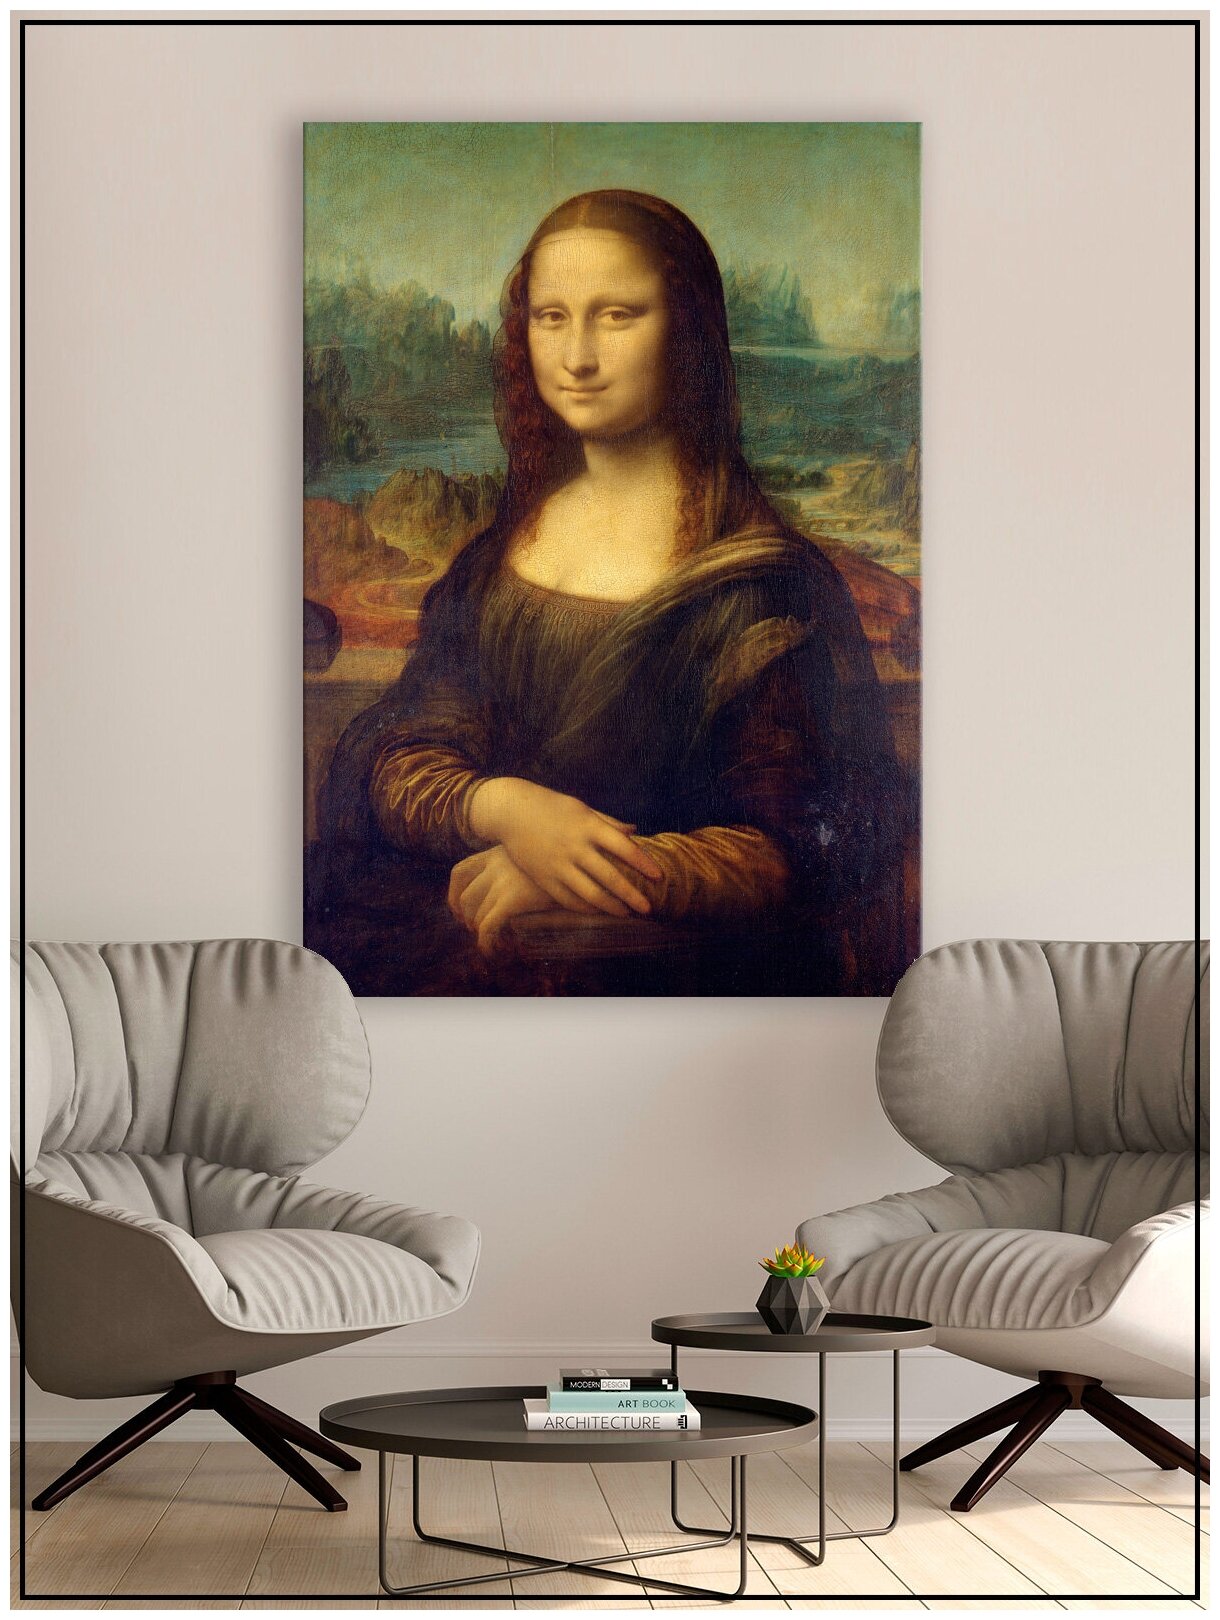 Картина для интерьера на натуральном хлопковом холсте "Мона Лиза", 55*77см, холст на подрамнике, картина в подарок для дома